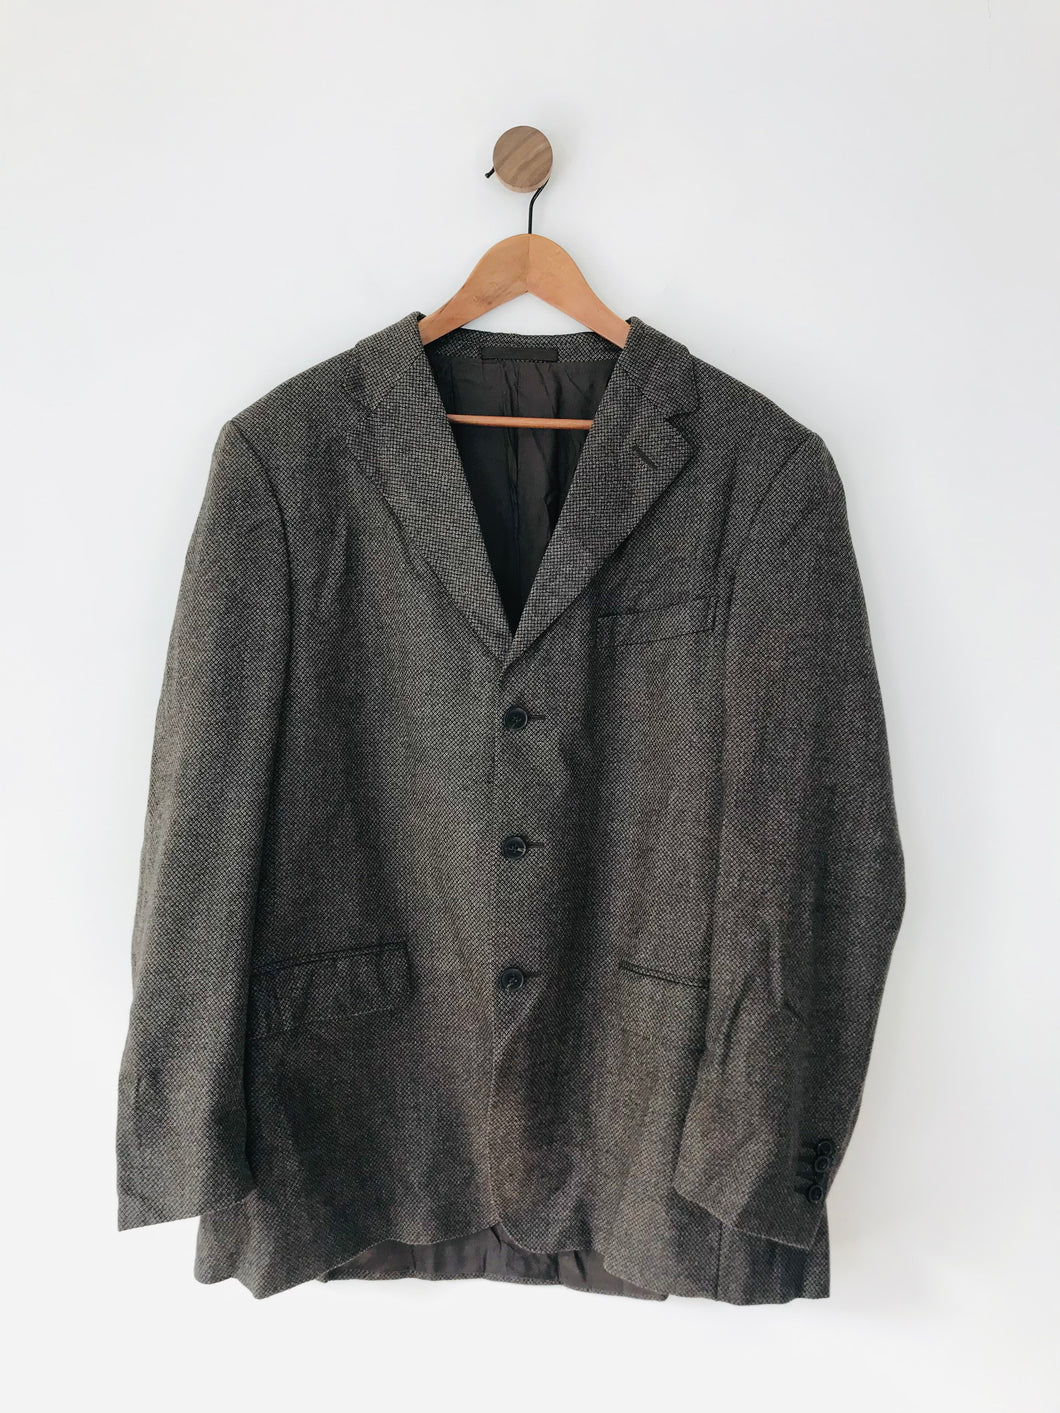 Zegna Men’s Wool Blazer Suit Jacket | 46 XL | Brown